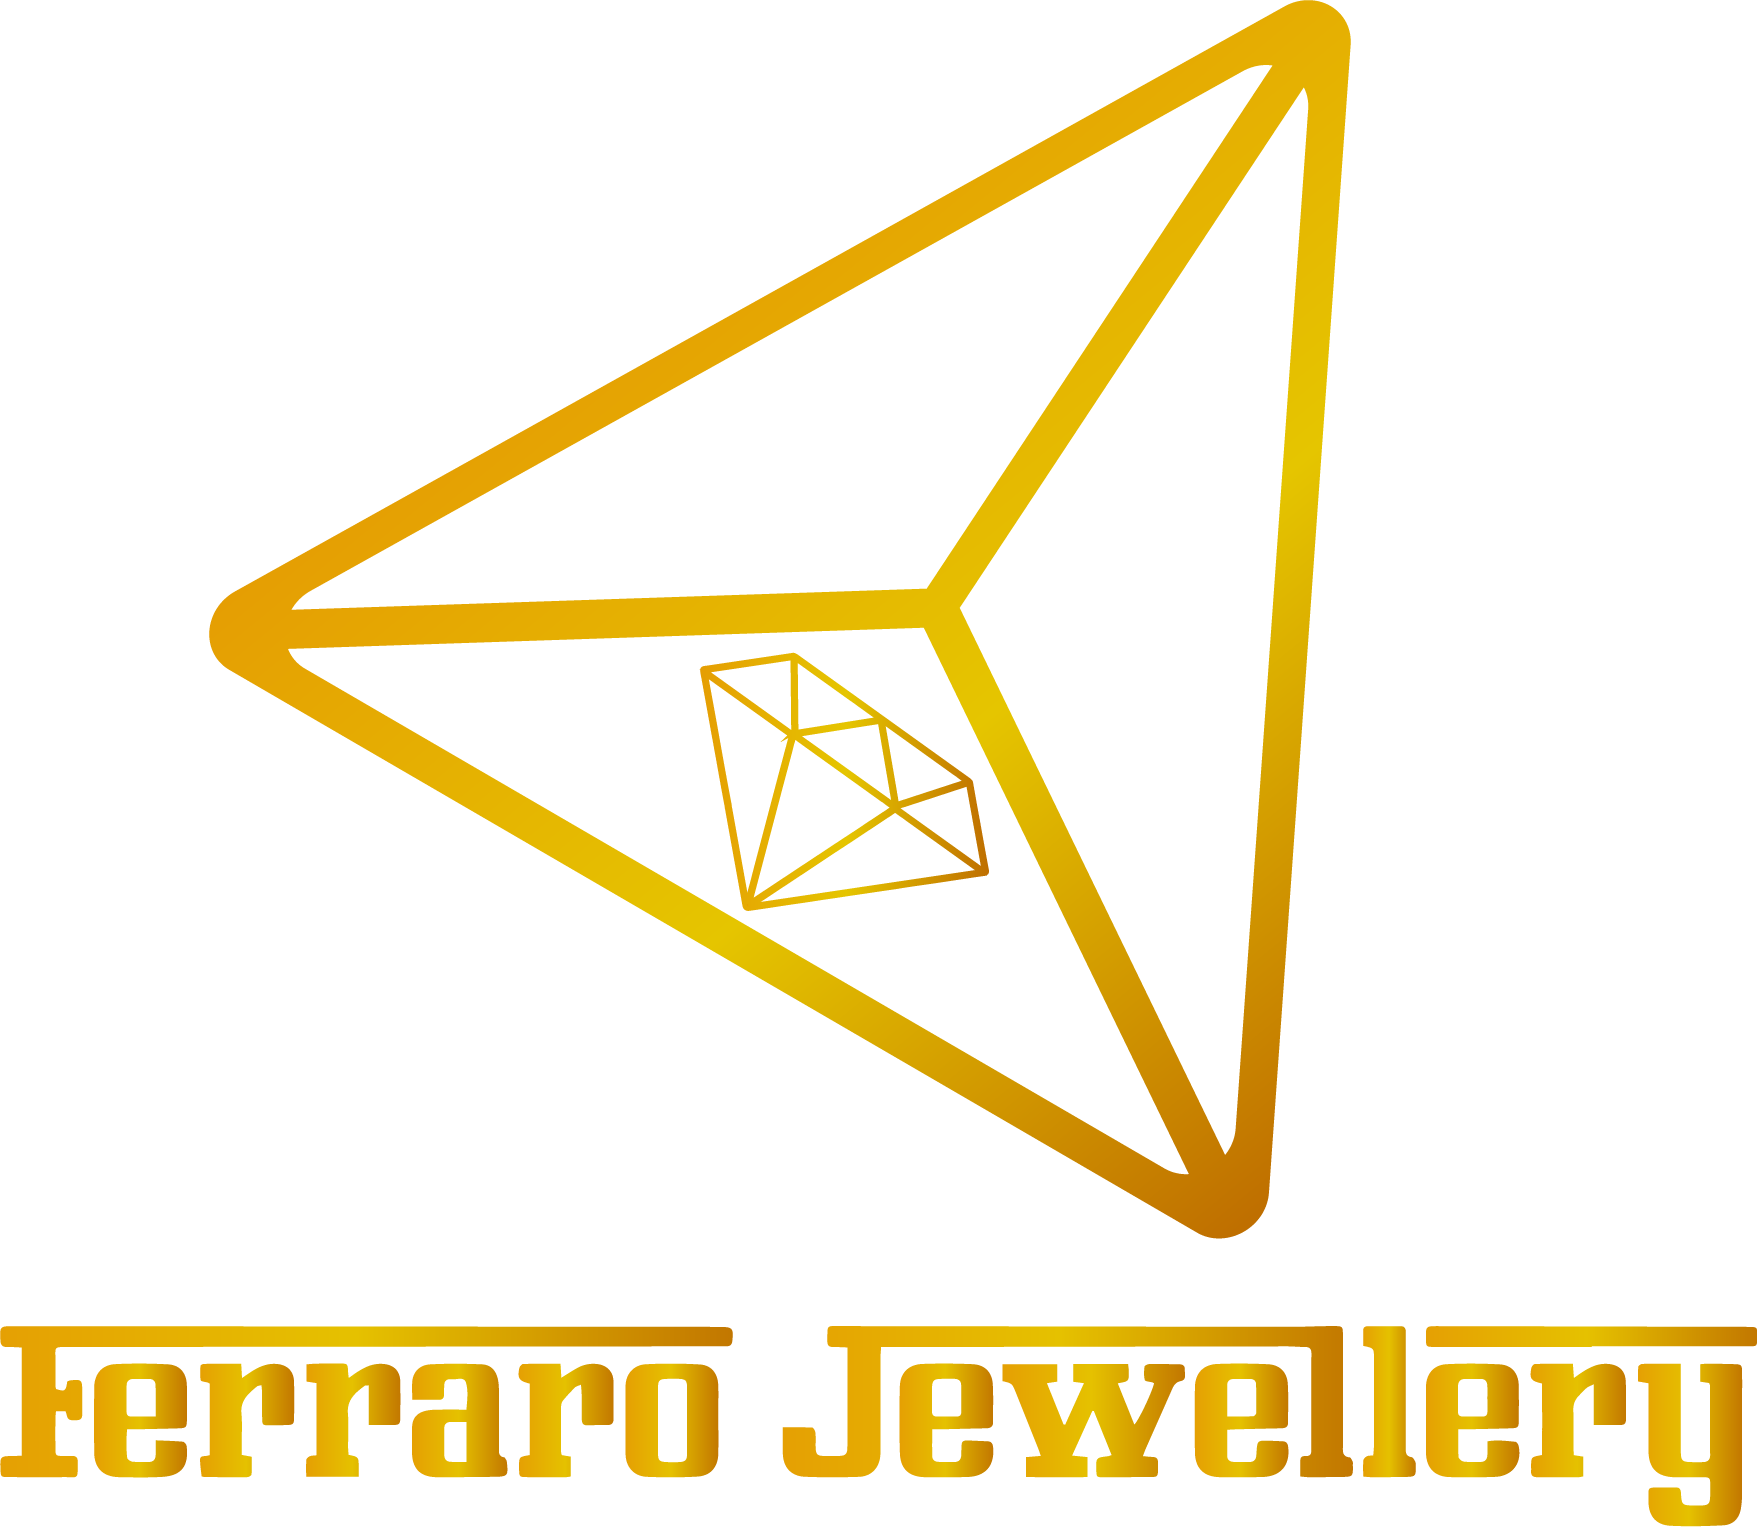 Ferraro Jewellery